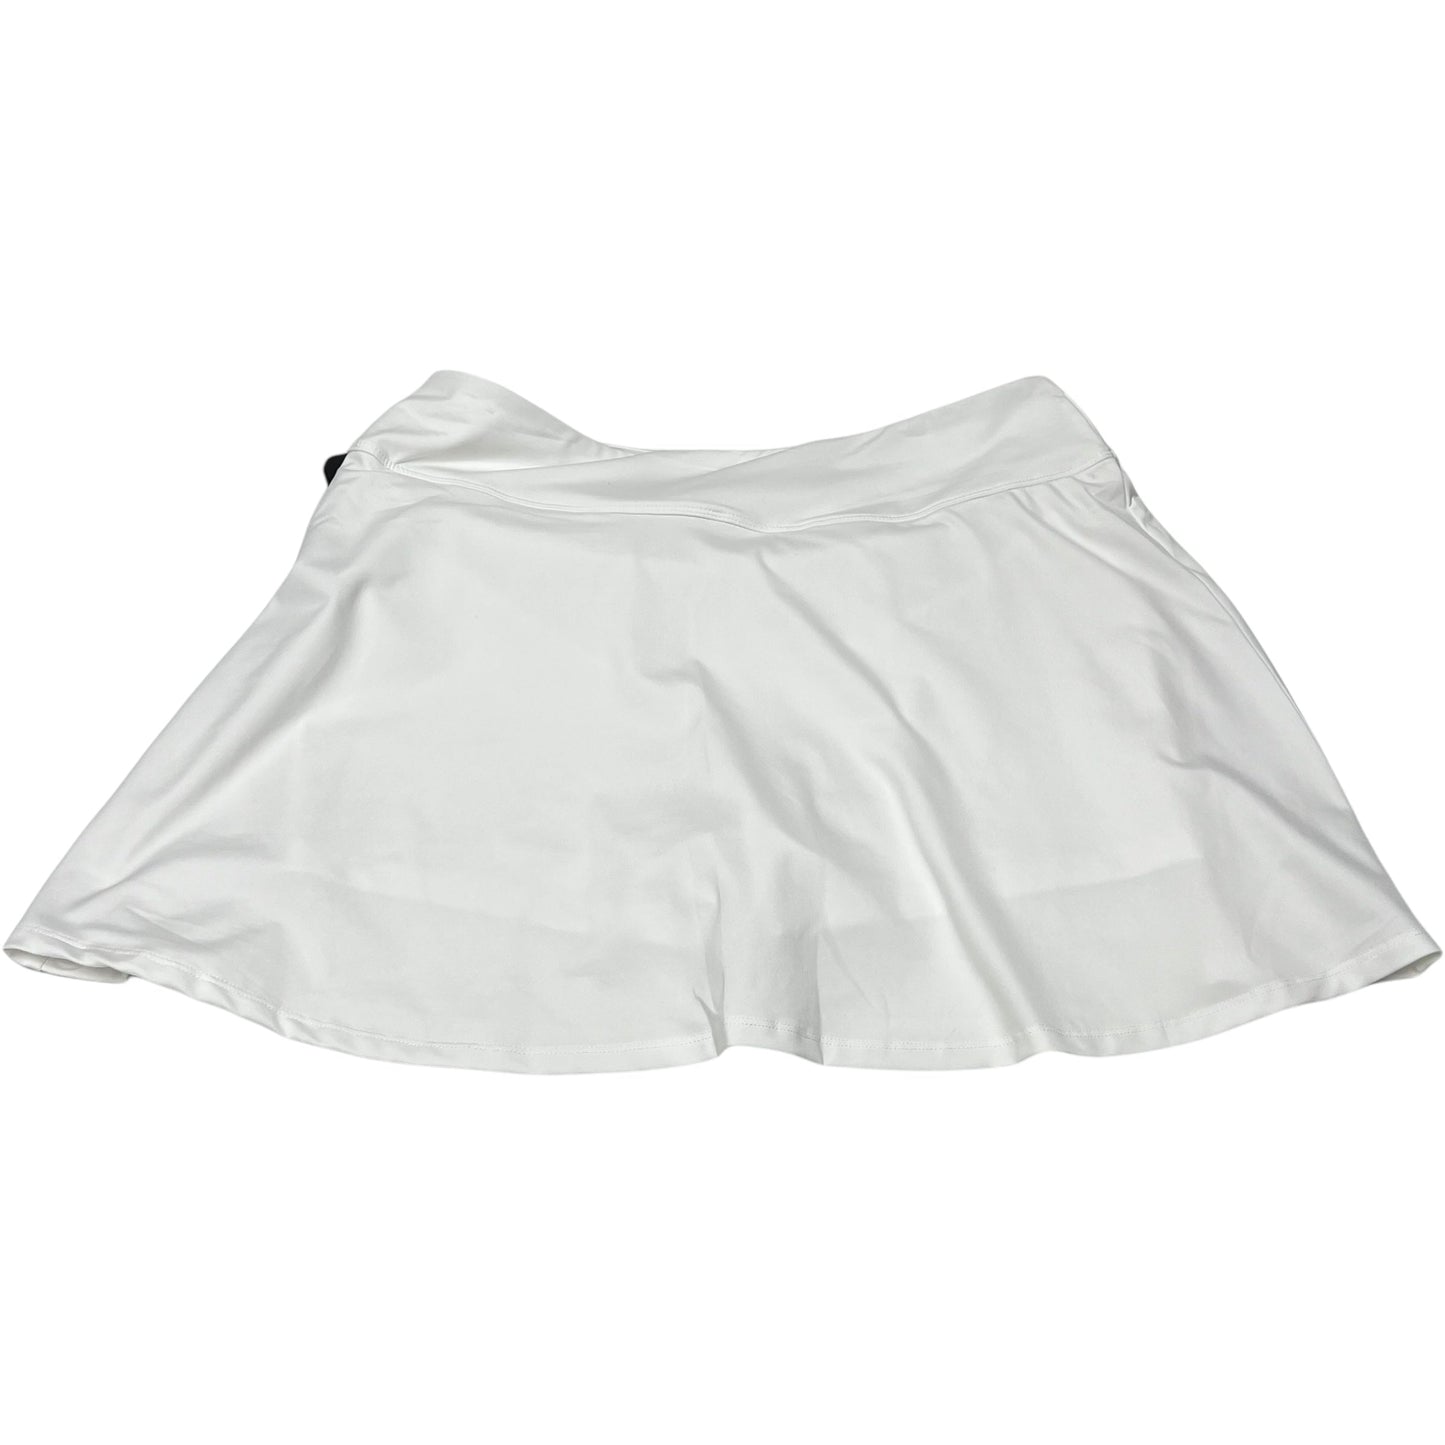 Athletic Skirt Skort By Fila  Size: Xl